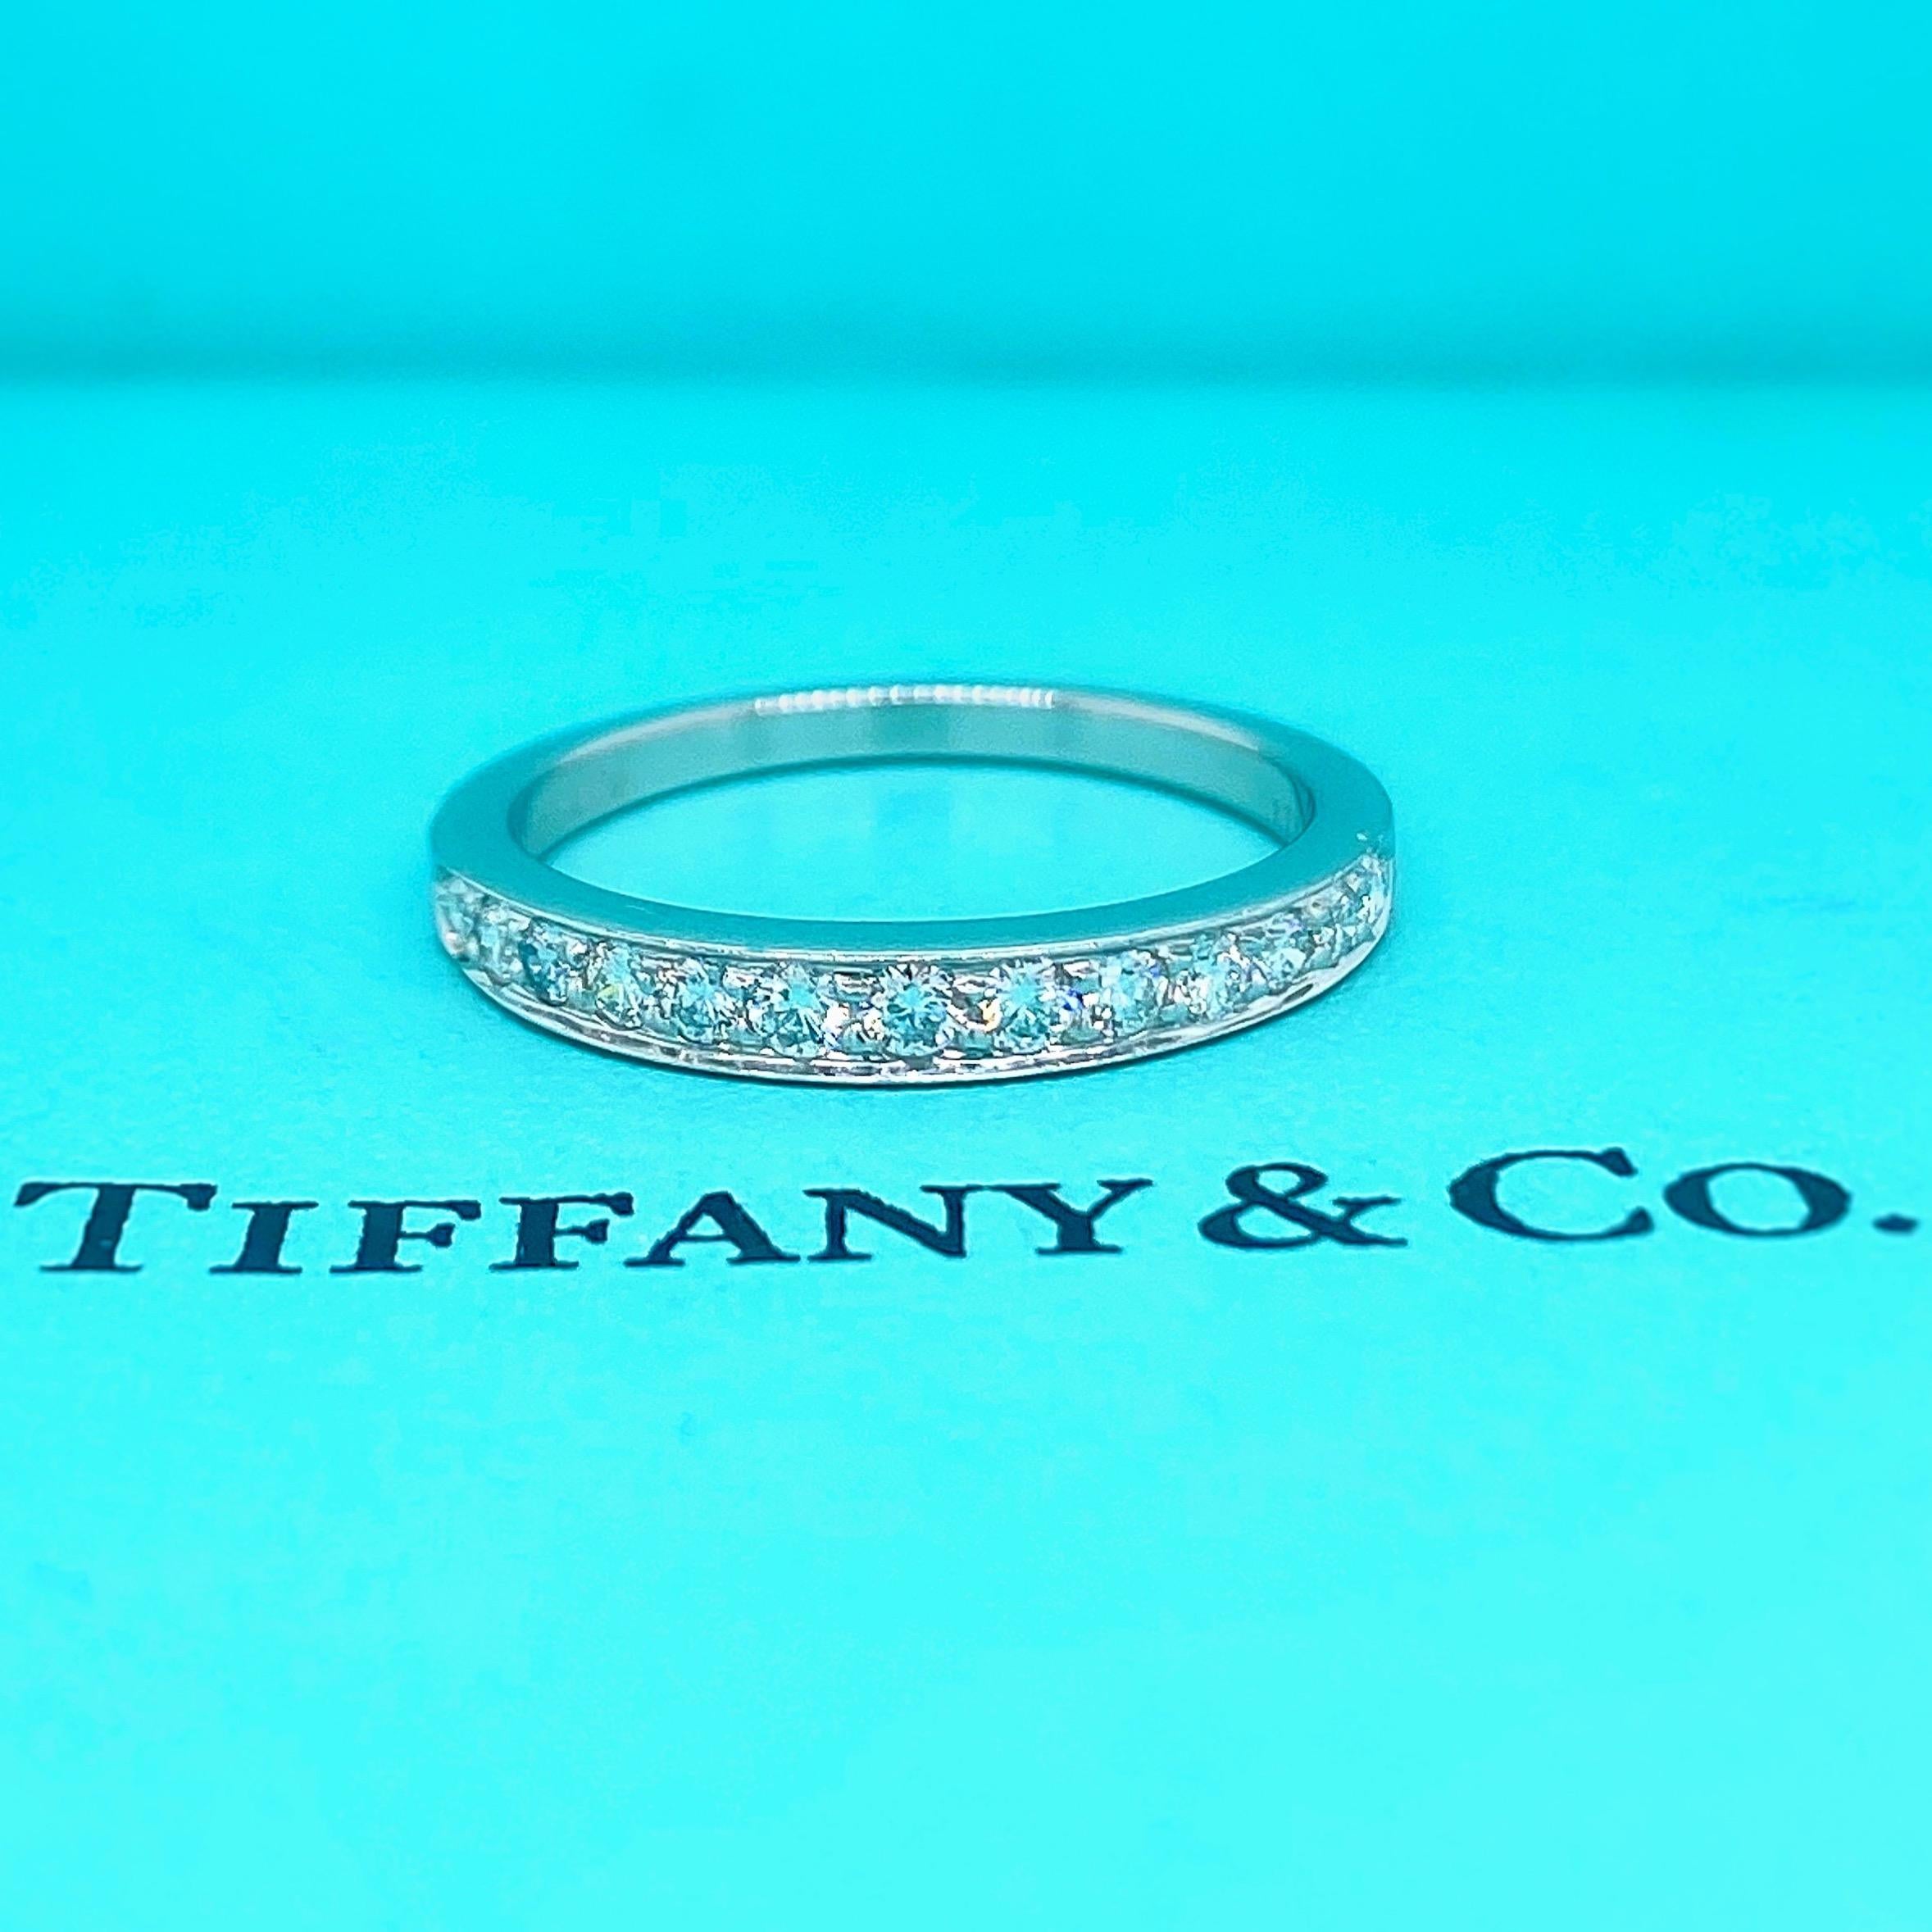 Tiffany & Co. Diamant Ehering Ring
Stil:  Halbkreis-Perlenset 
Metall:  Platin PT950
Größe:  5.25 - groß
Abmessungen:  2.75 MM
TCW:  0.27 tcw
Hauptdiamant:  13 runde Brillantdiamanten
Farbe & Klarheit:  F - G / VS1
Wahrzeichen:  ©TIFFANY&CO.